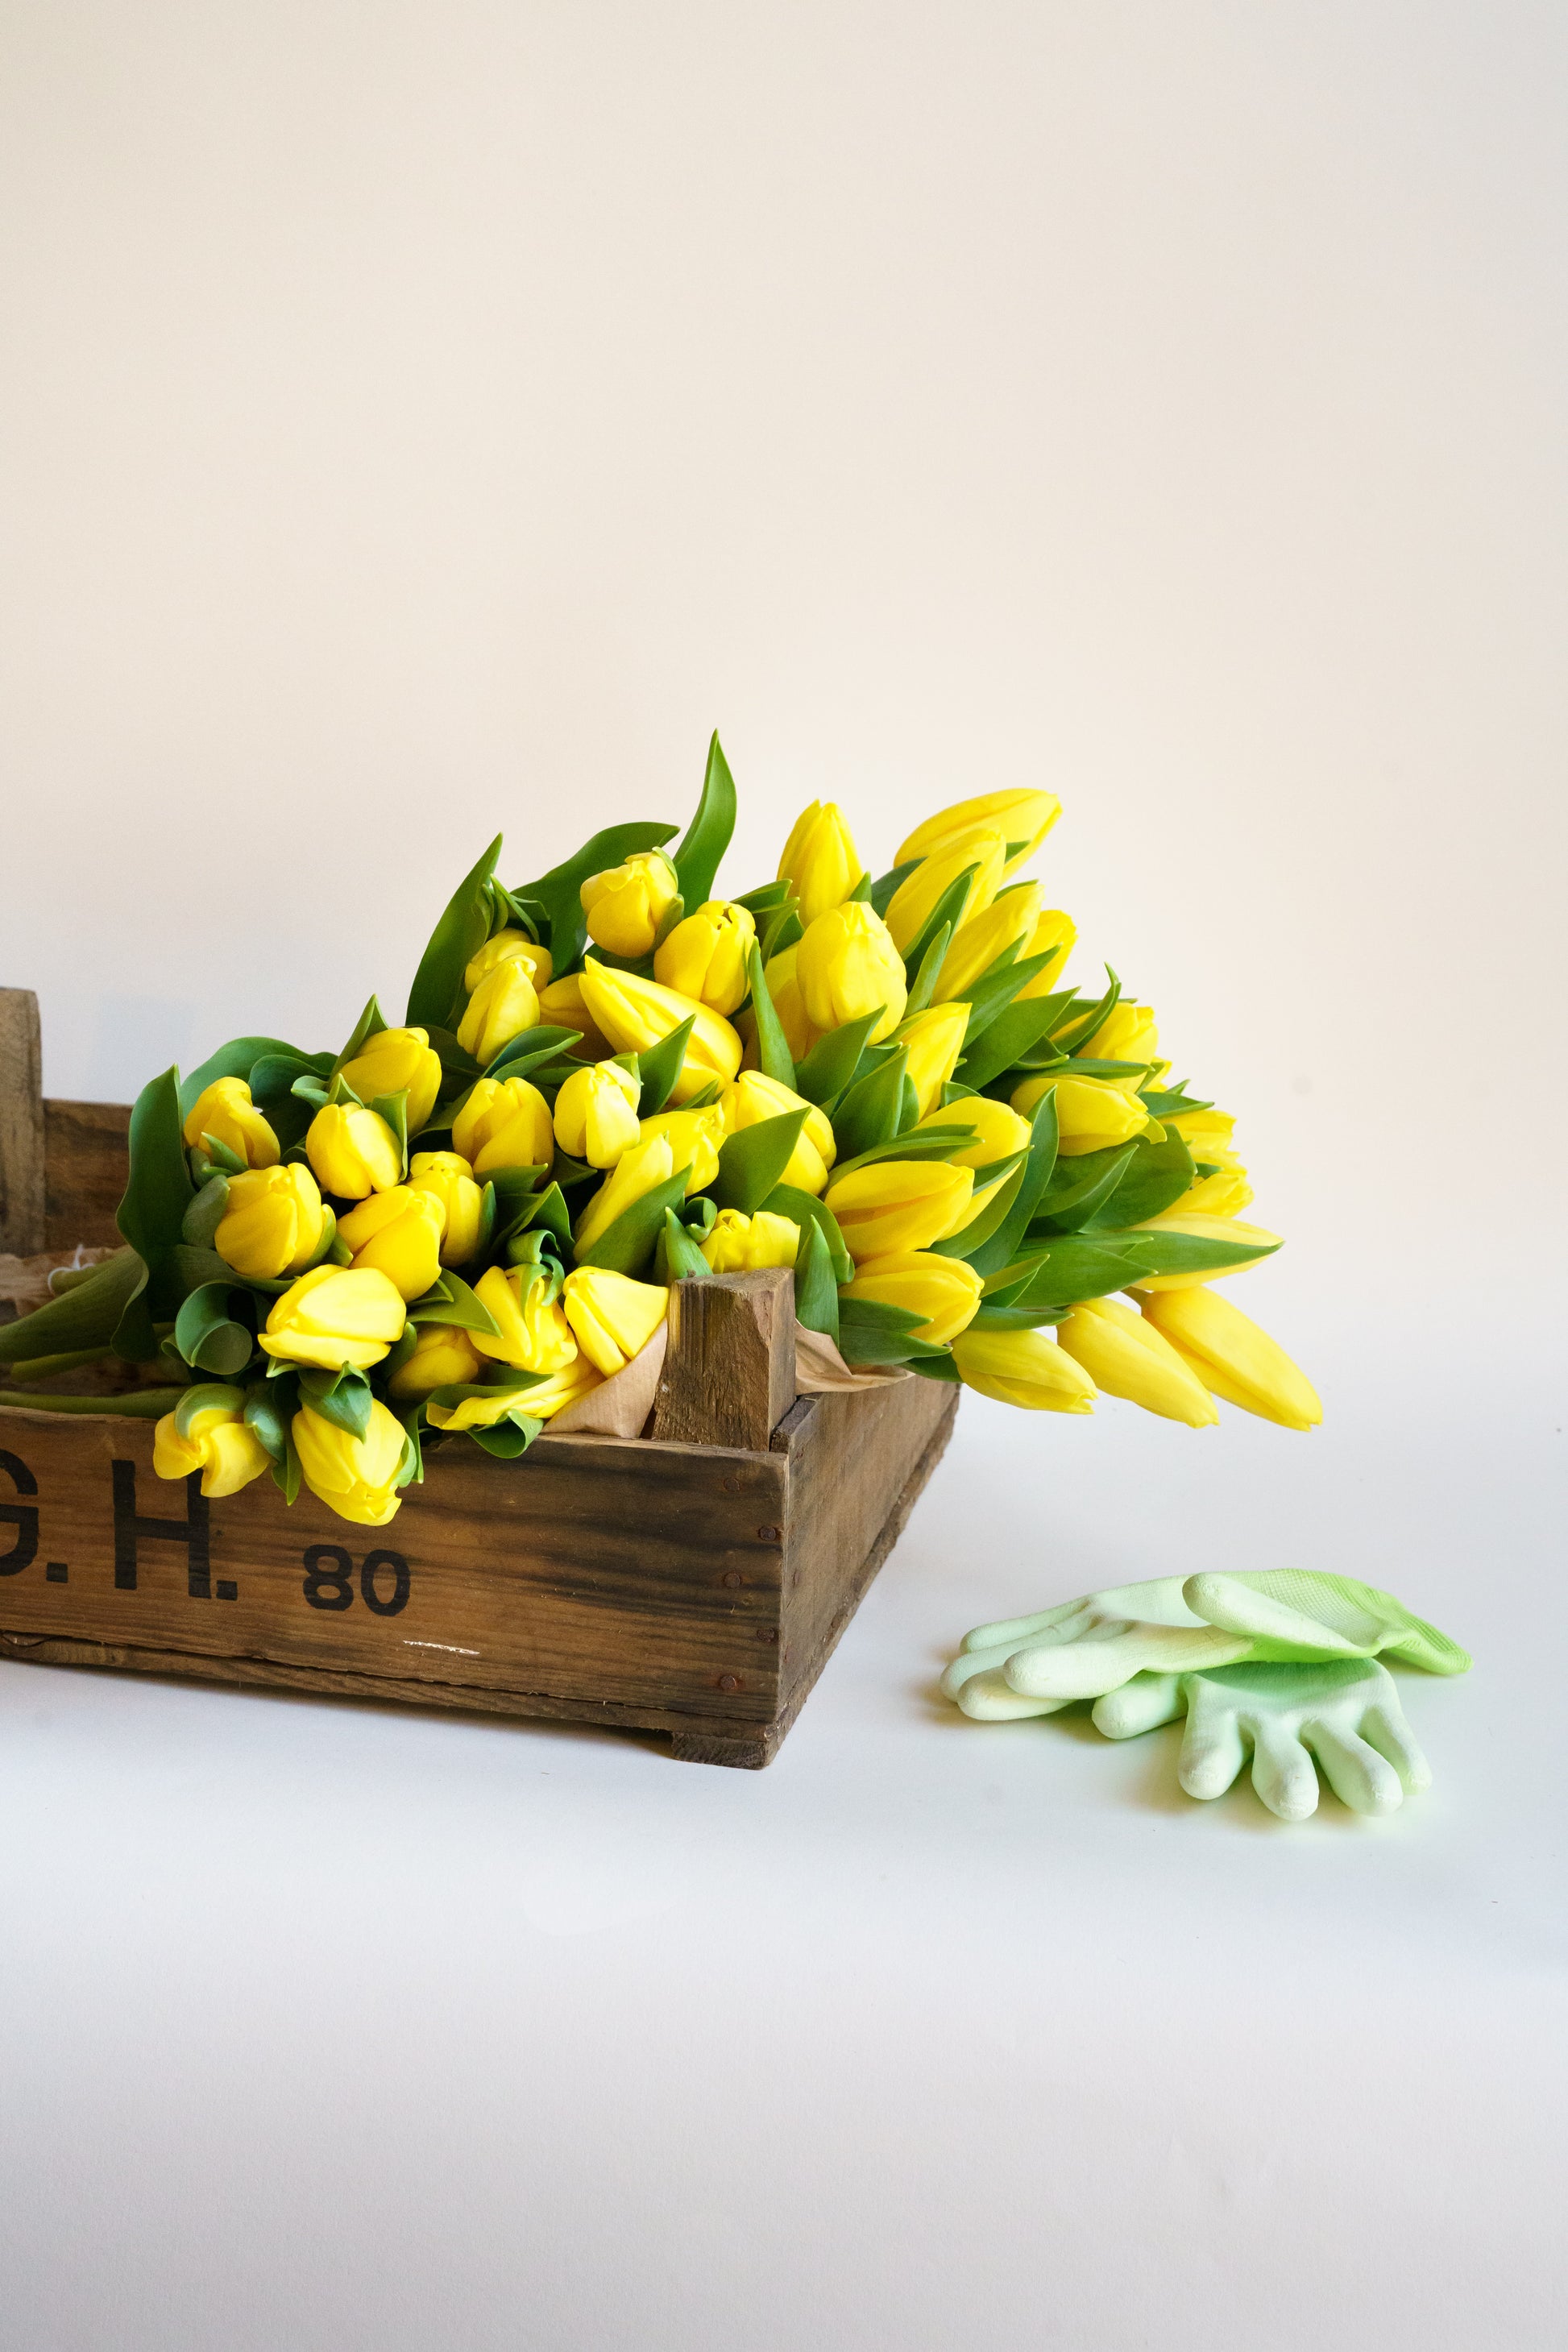 Gele tulpen geven je het ultieme paas gevoel! Online bloemen bestellen bij Pluukz is altijd een goed idee! 